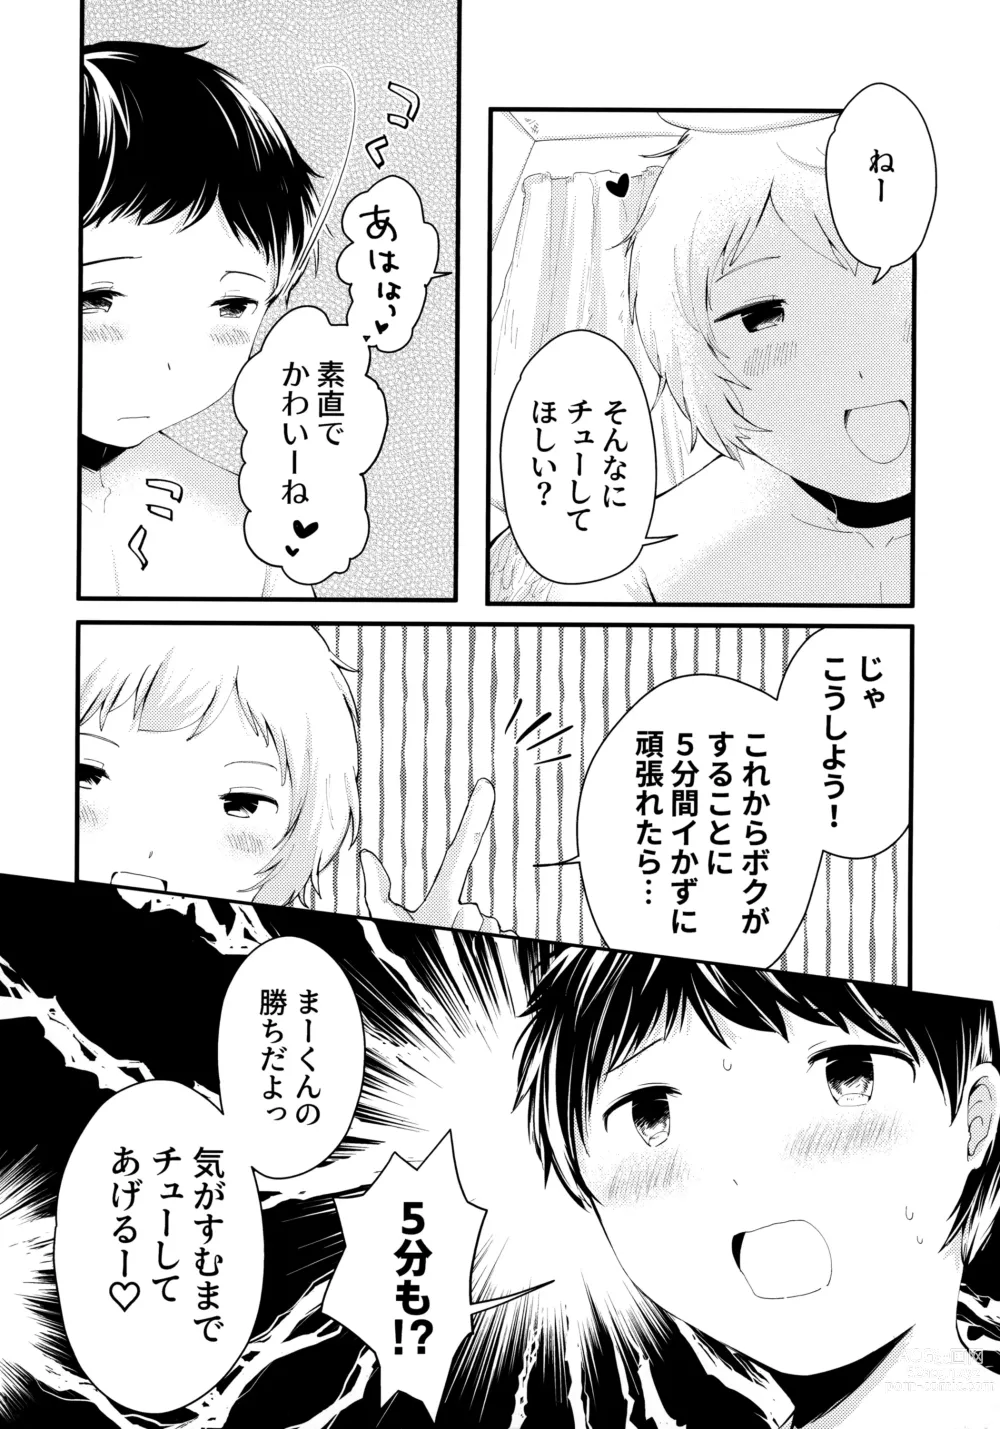 Page 7 of doujinshi Tenshinohane Yasume